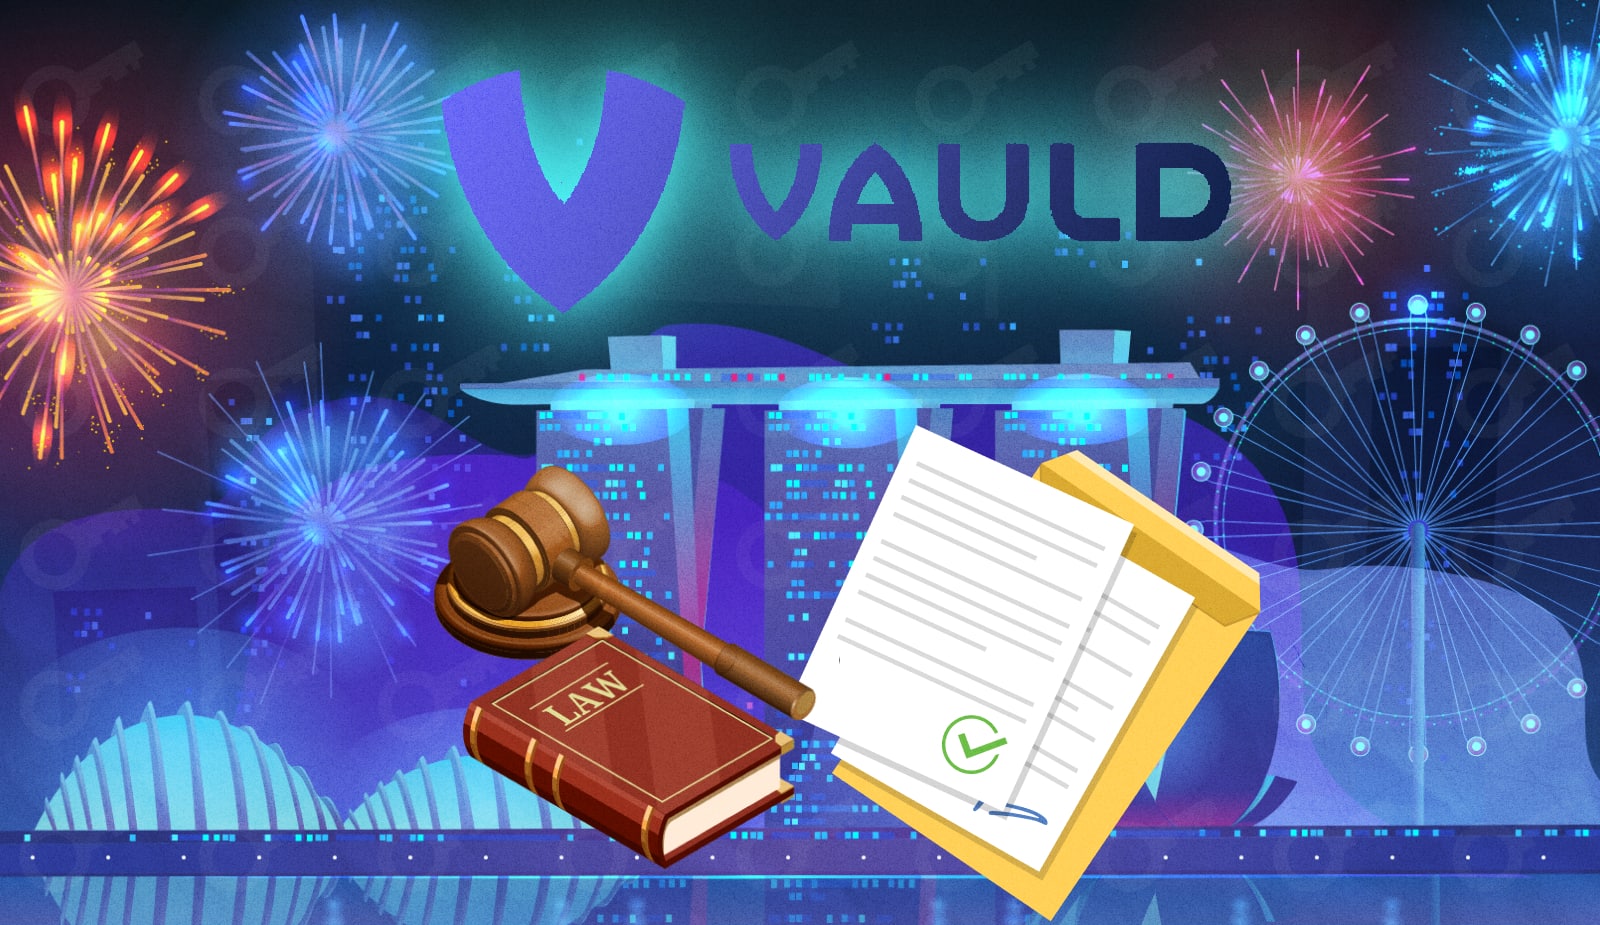 Vauld получил 3-месячную защиту от кредиторов. Заглавный коллаж новости.